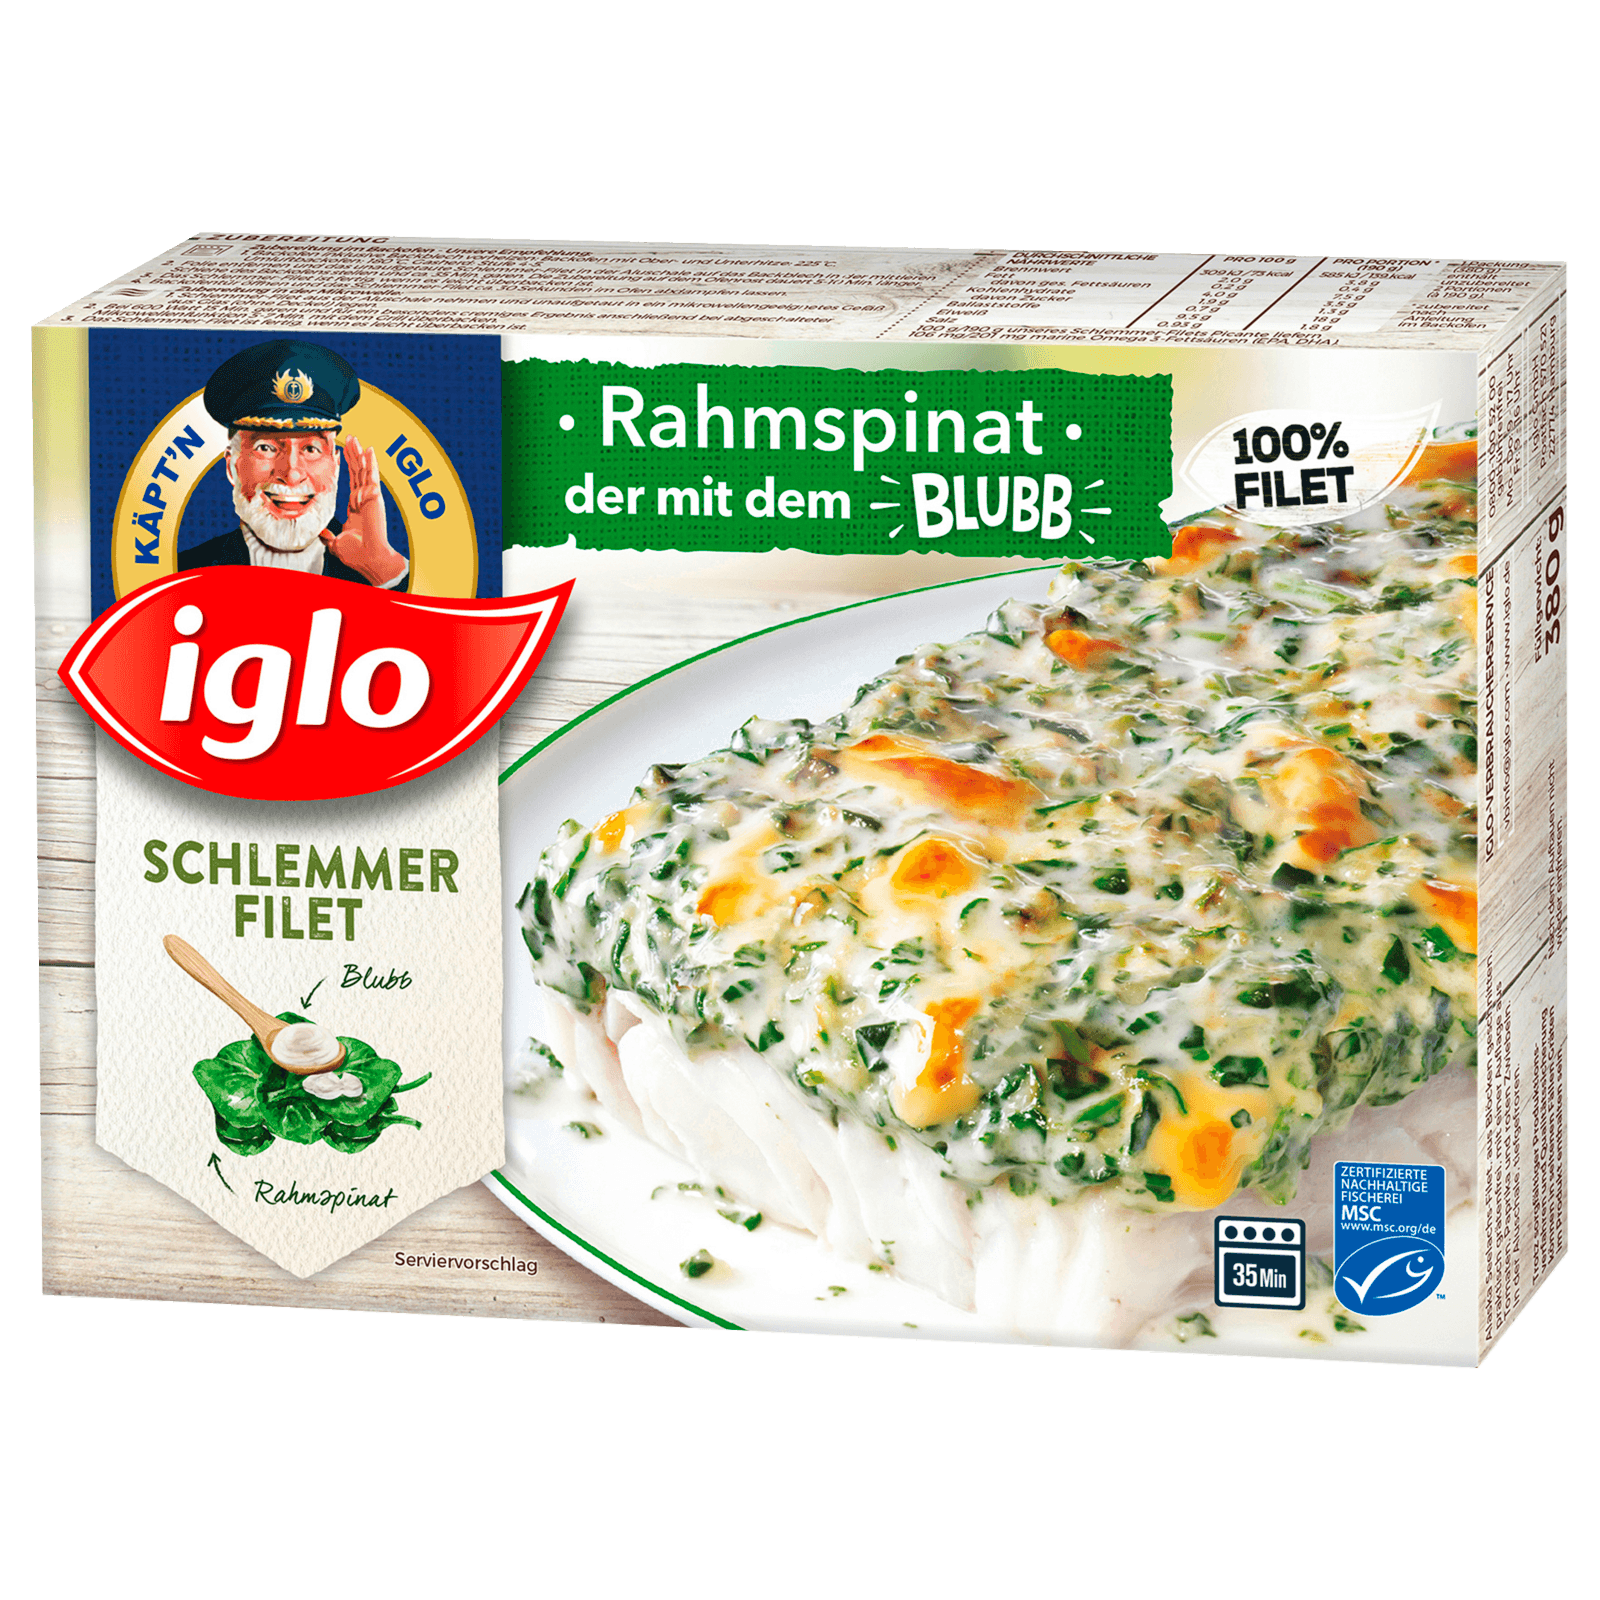 Iglo Schlemmerfilet Rahmspinat 380g bei REWE online bestellen!